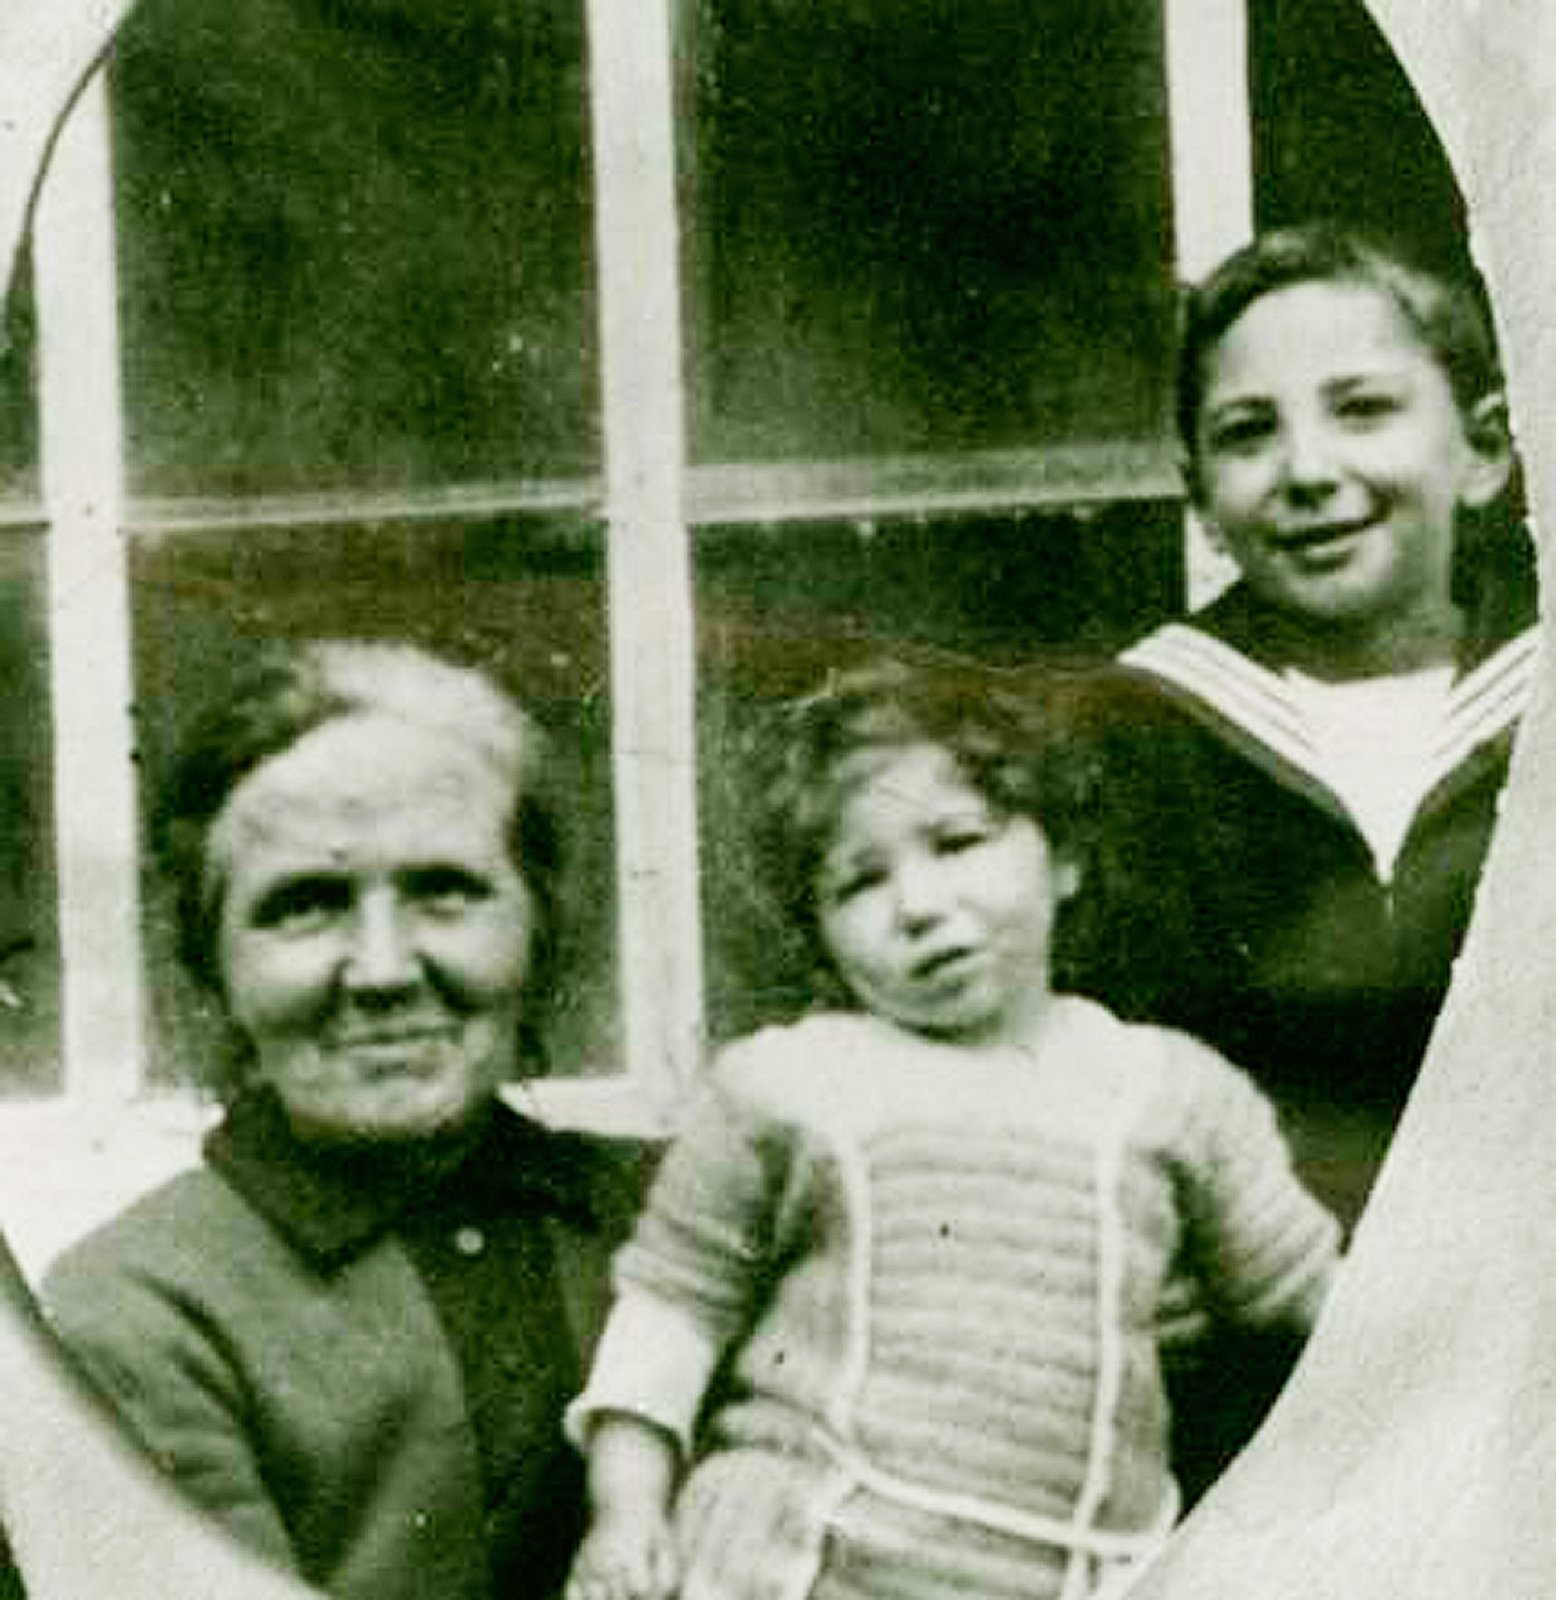 Marianne (Mitte) und Manfred Bernheim (rechts) mit ihrem Kindermädchen.